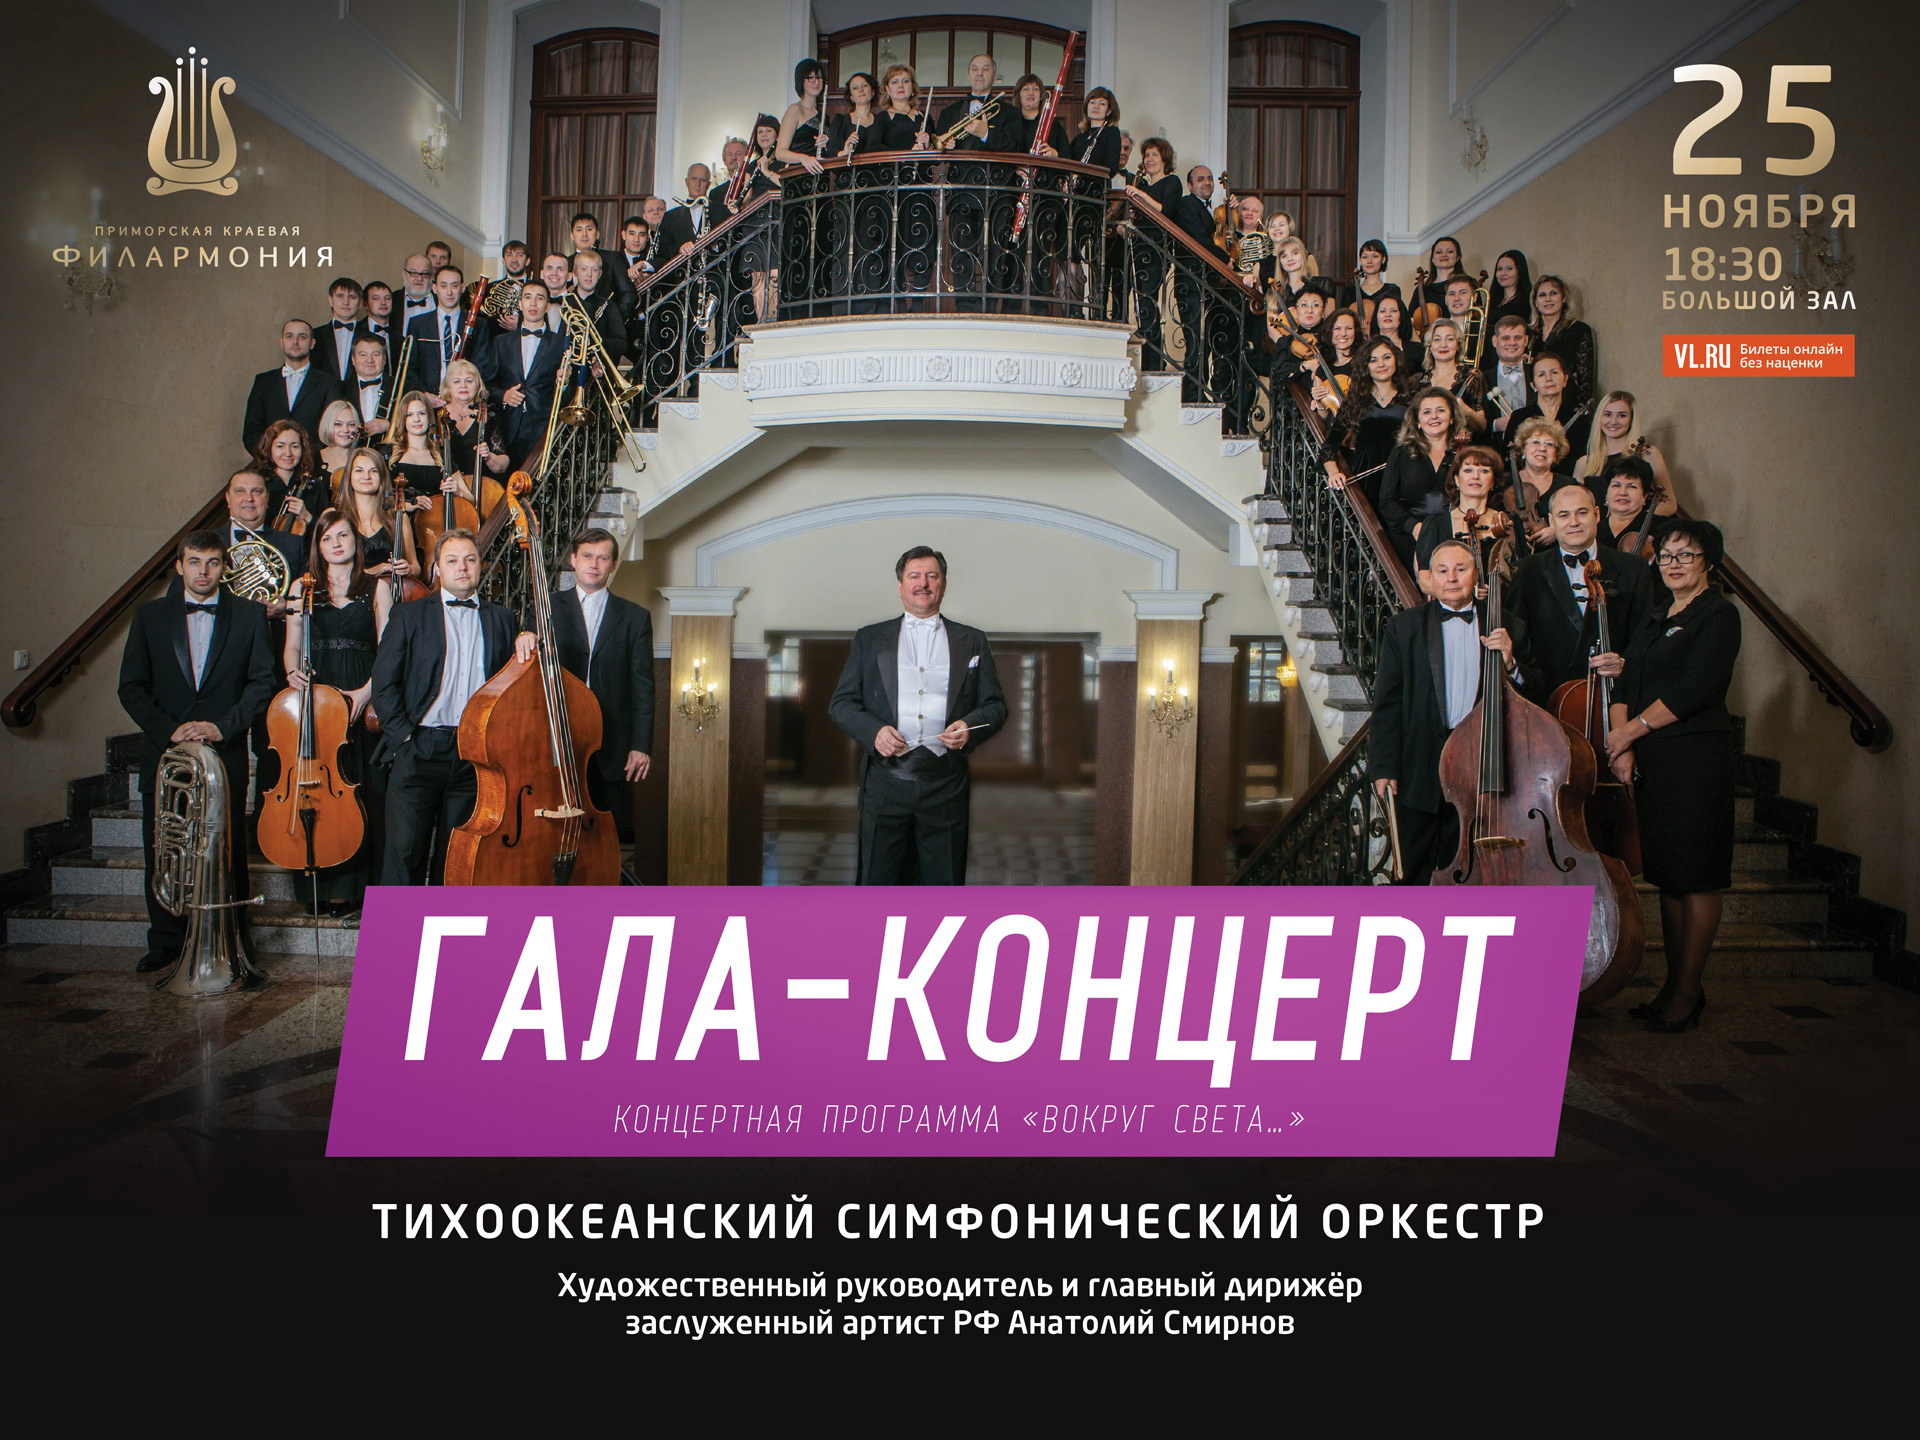 25 ноября Большой зал в 18:30  Концертная программа «ГАЛА-КОНЦЕРТ»